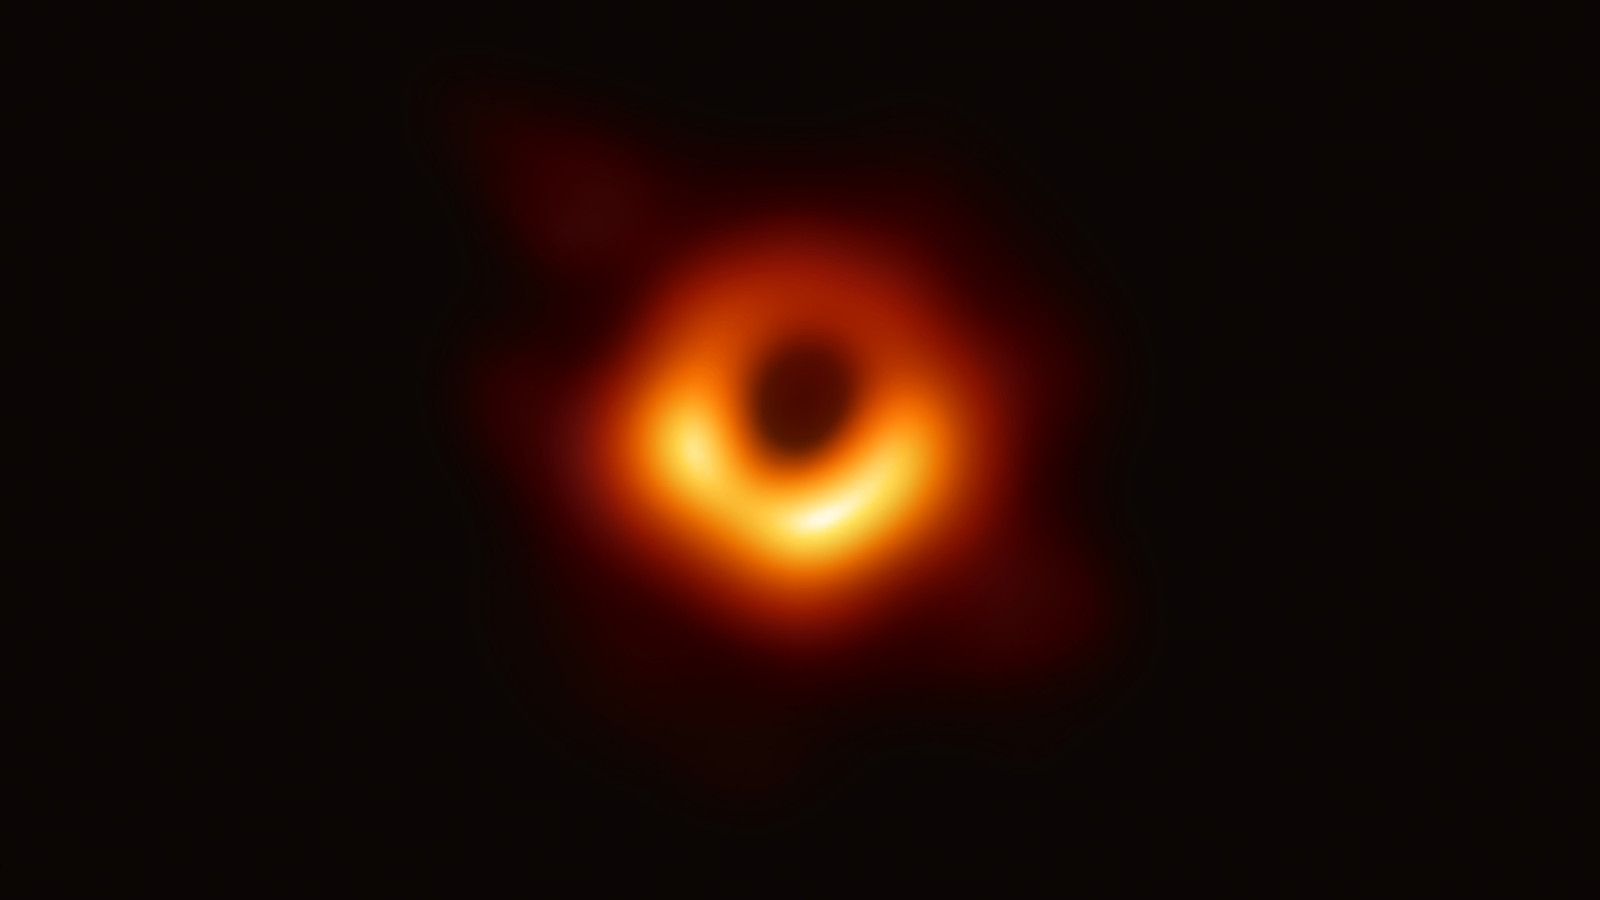 ثبت اولین تصویر واقعی از یک سیاه چاله